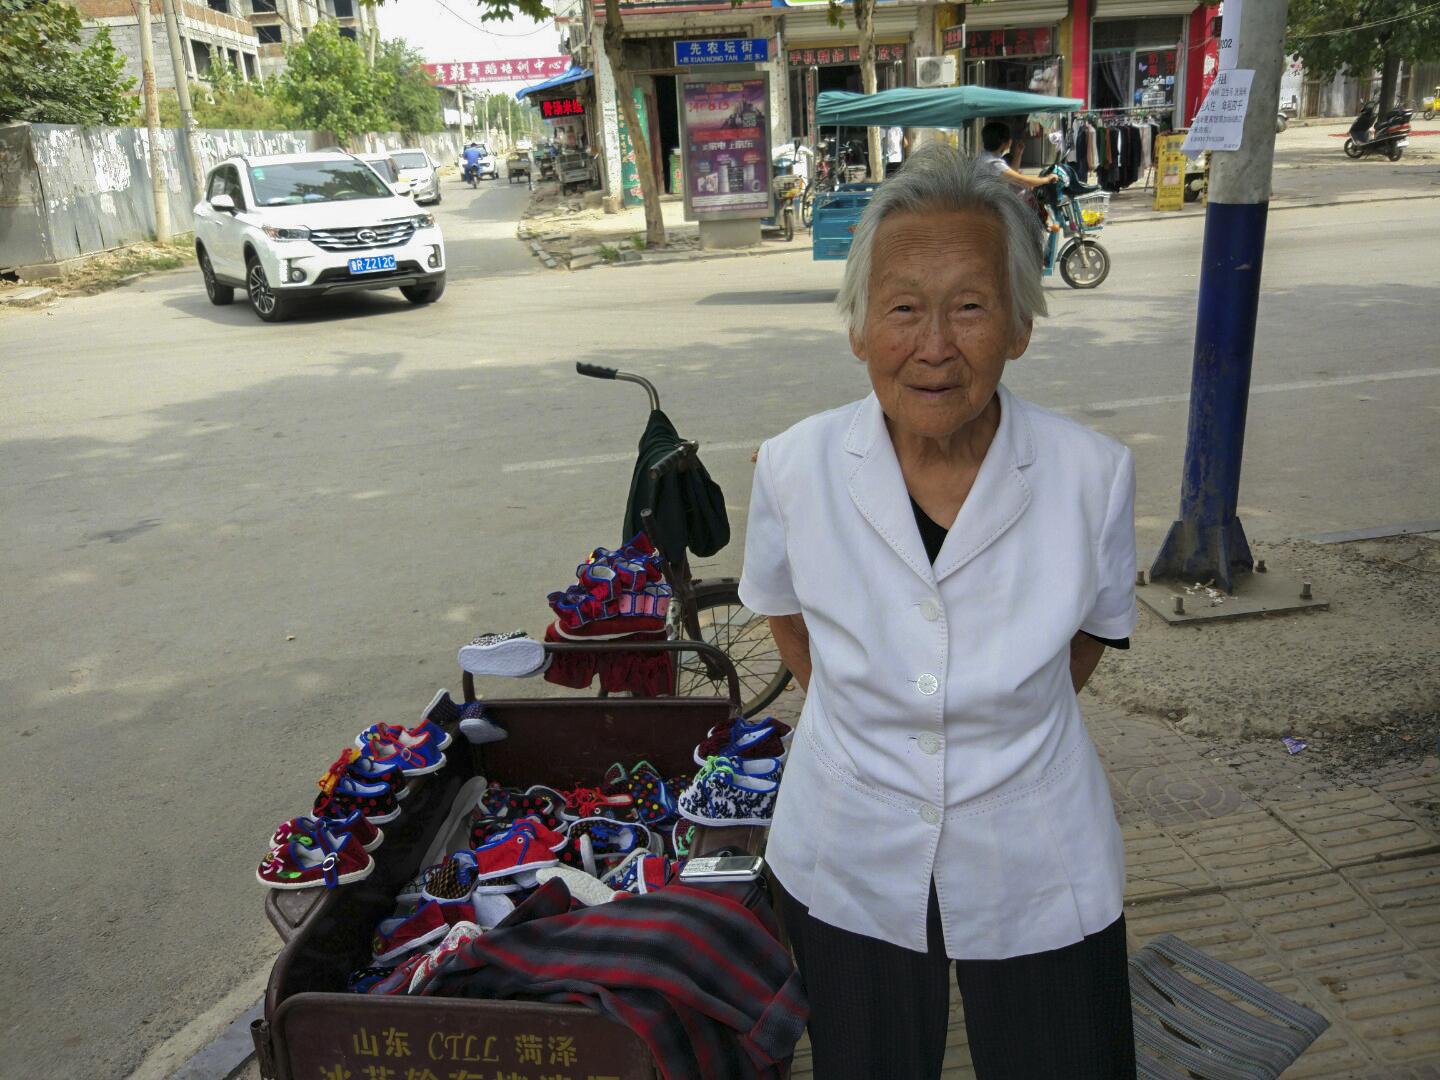 80岁老人亲手缝制传统布鞋售卖，不图赚钱，只为老